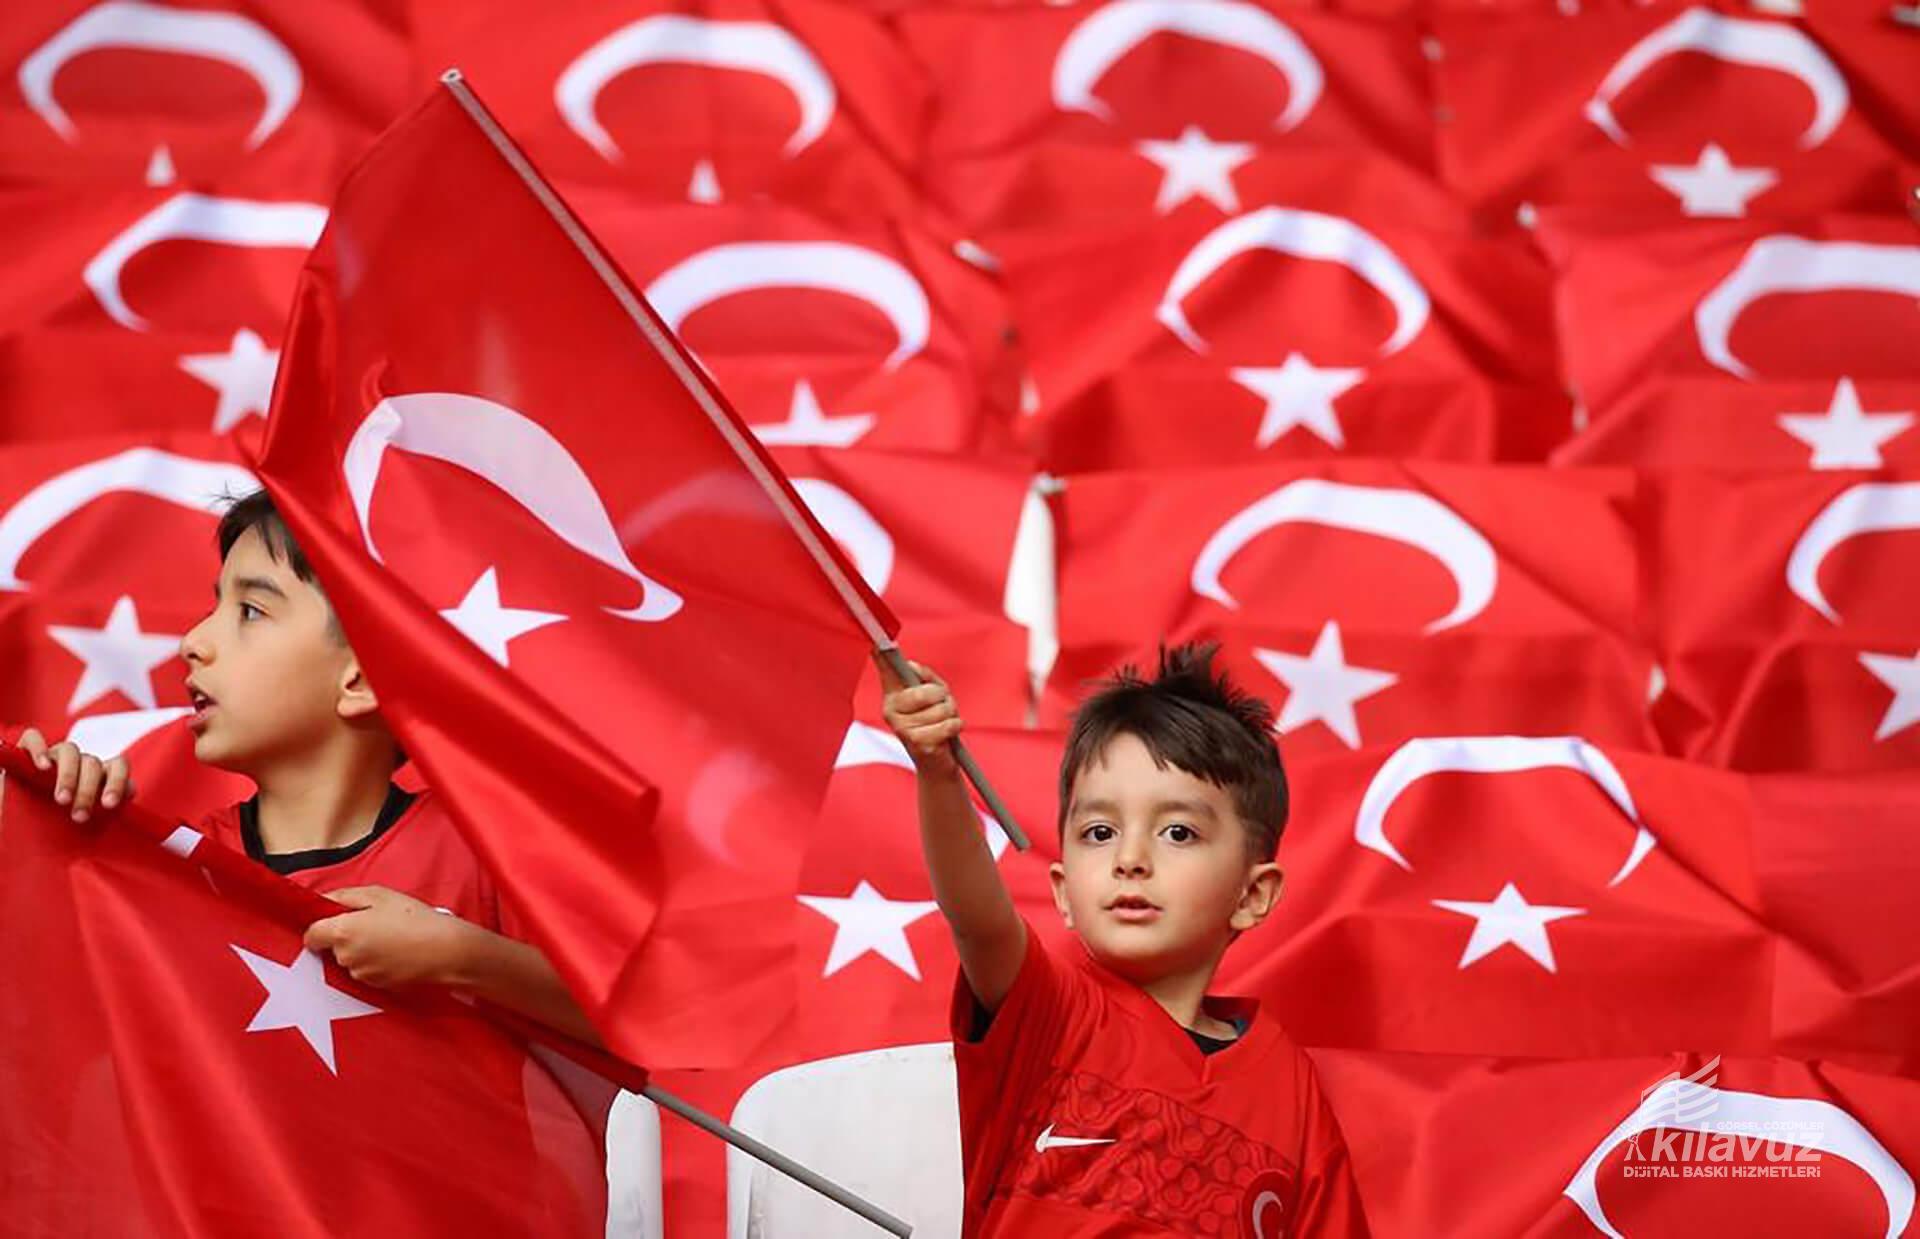 Elde Sallama Türk Bayrağı - Sopalı Bayrak & Çubuklu Bayrak Ölçüleri